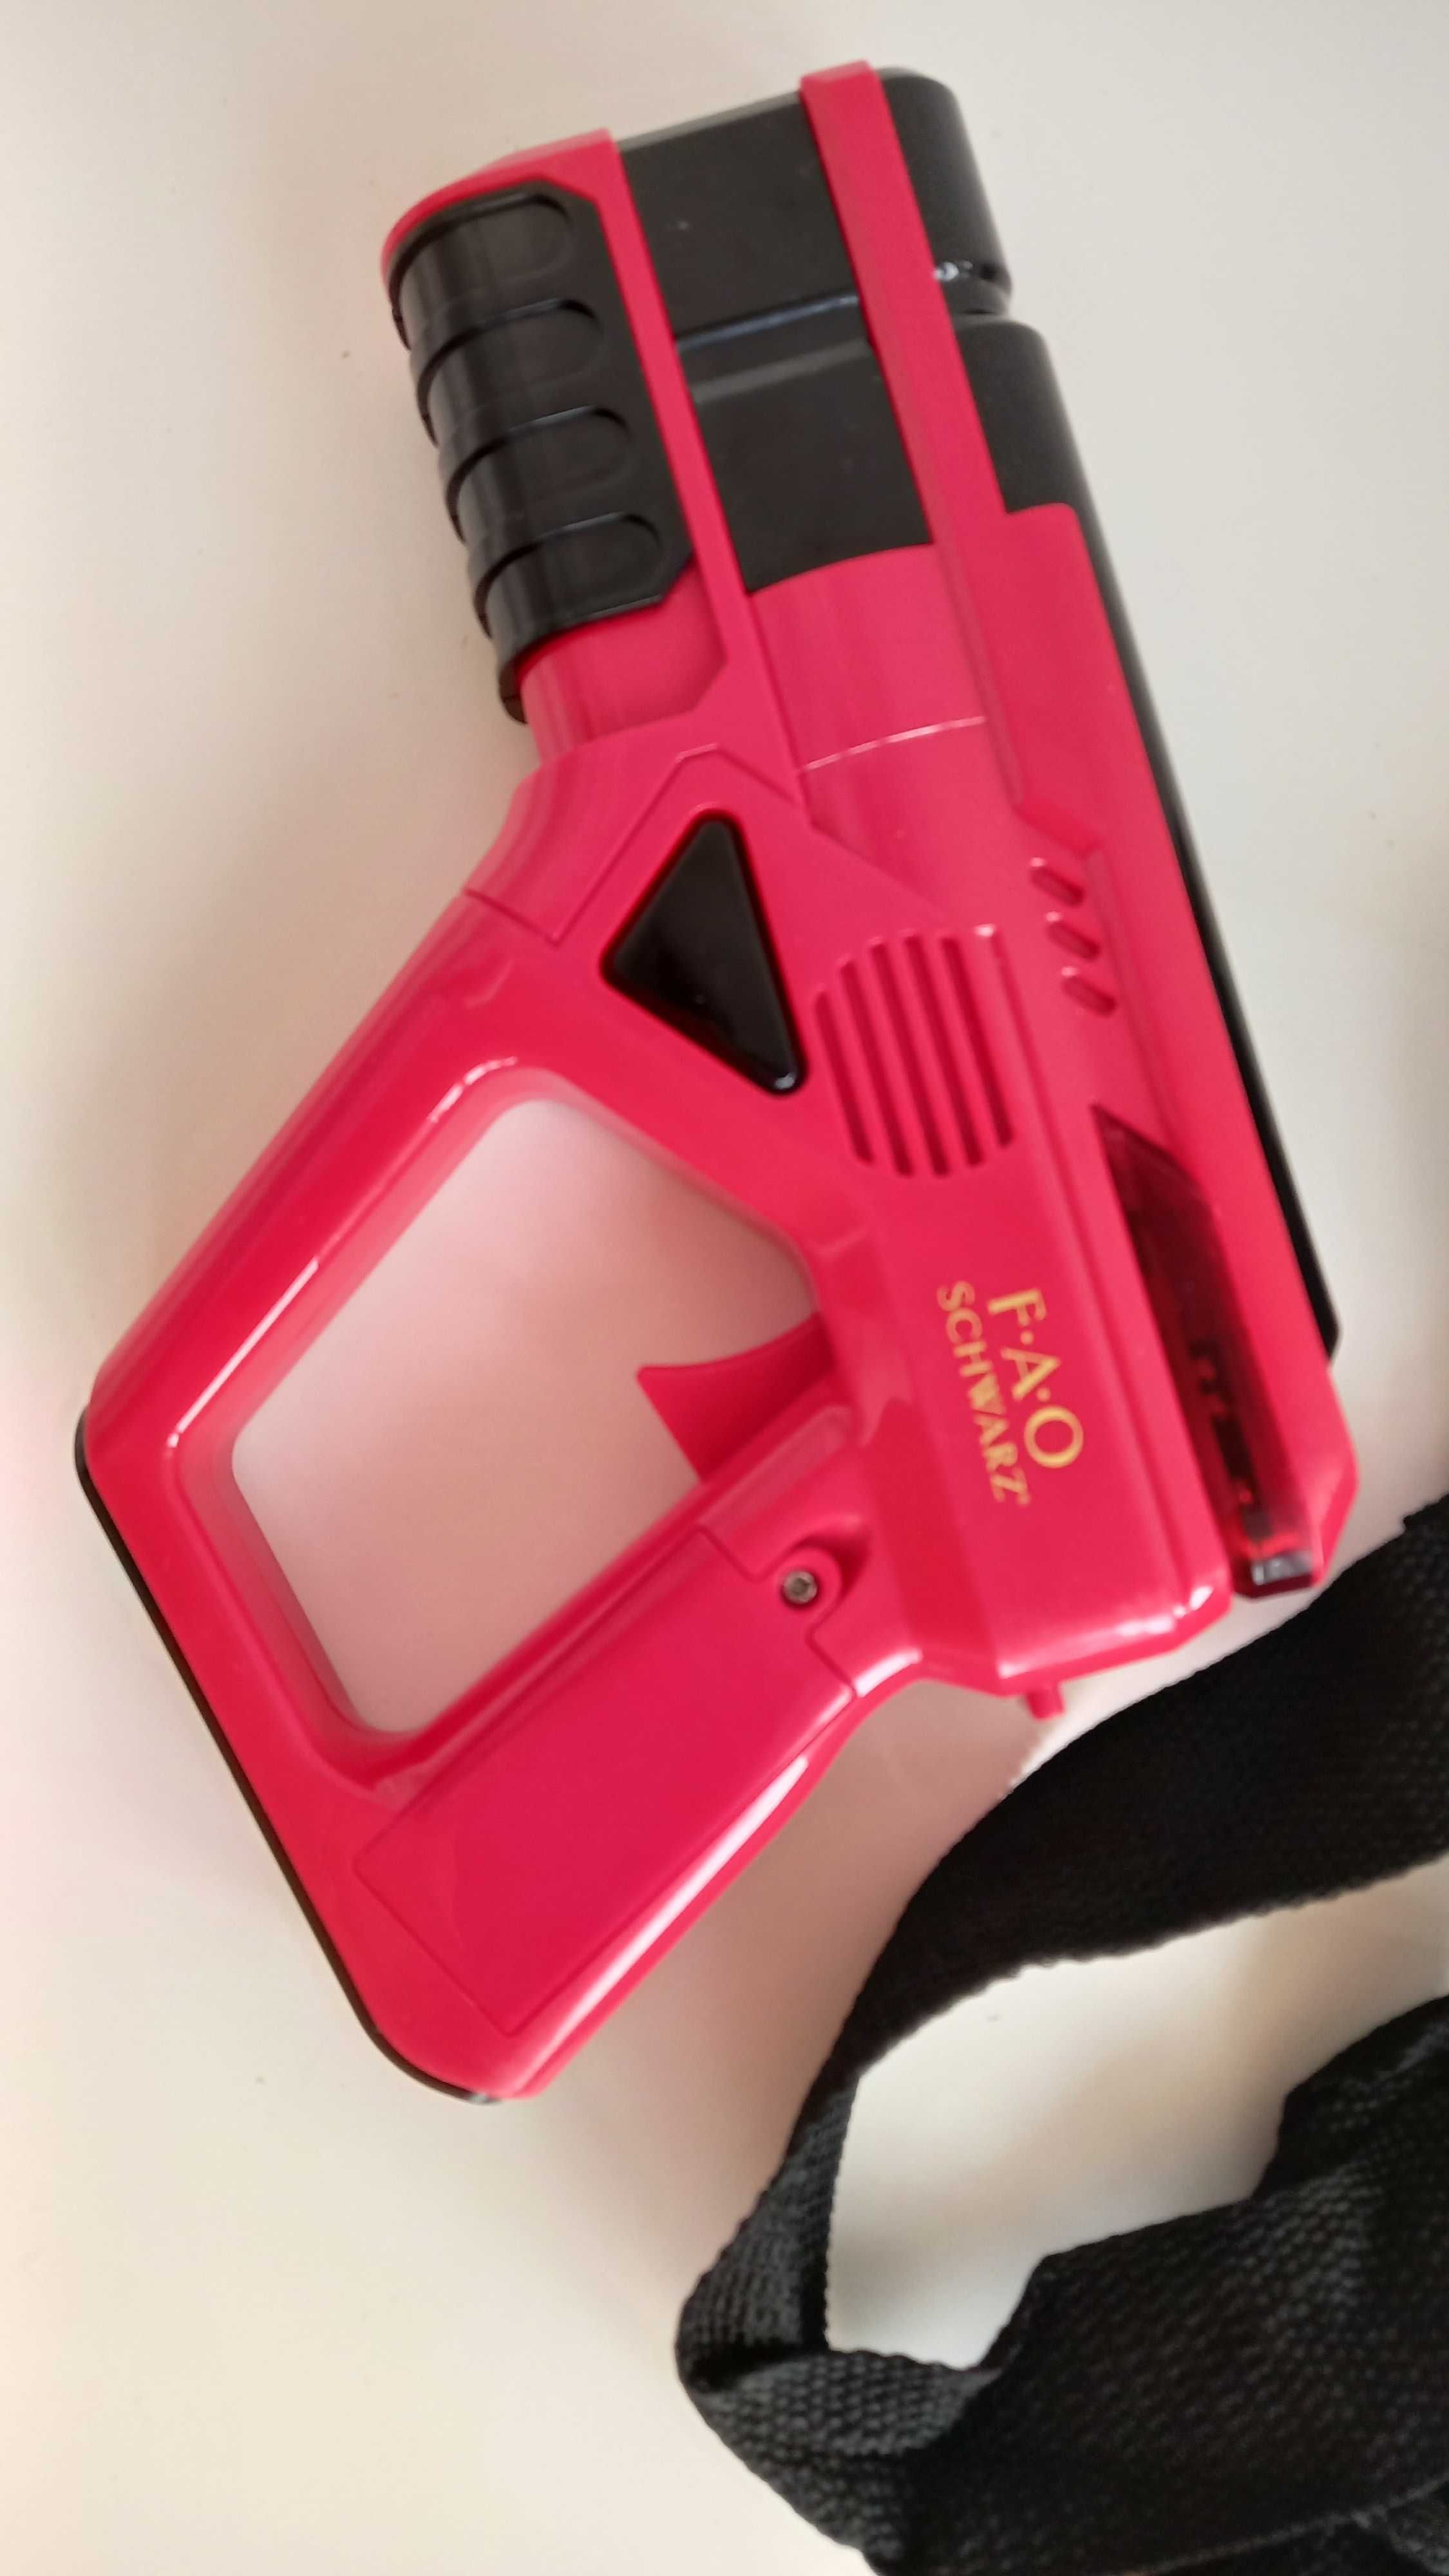 Kit de laser tag FAO Schwarz com 2 pistolas e 2 receptores